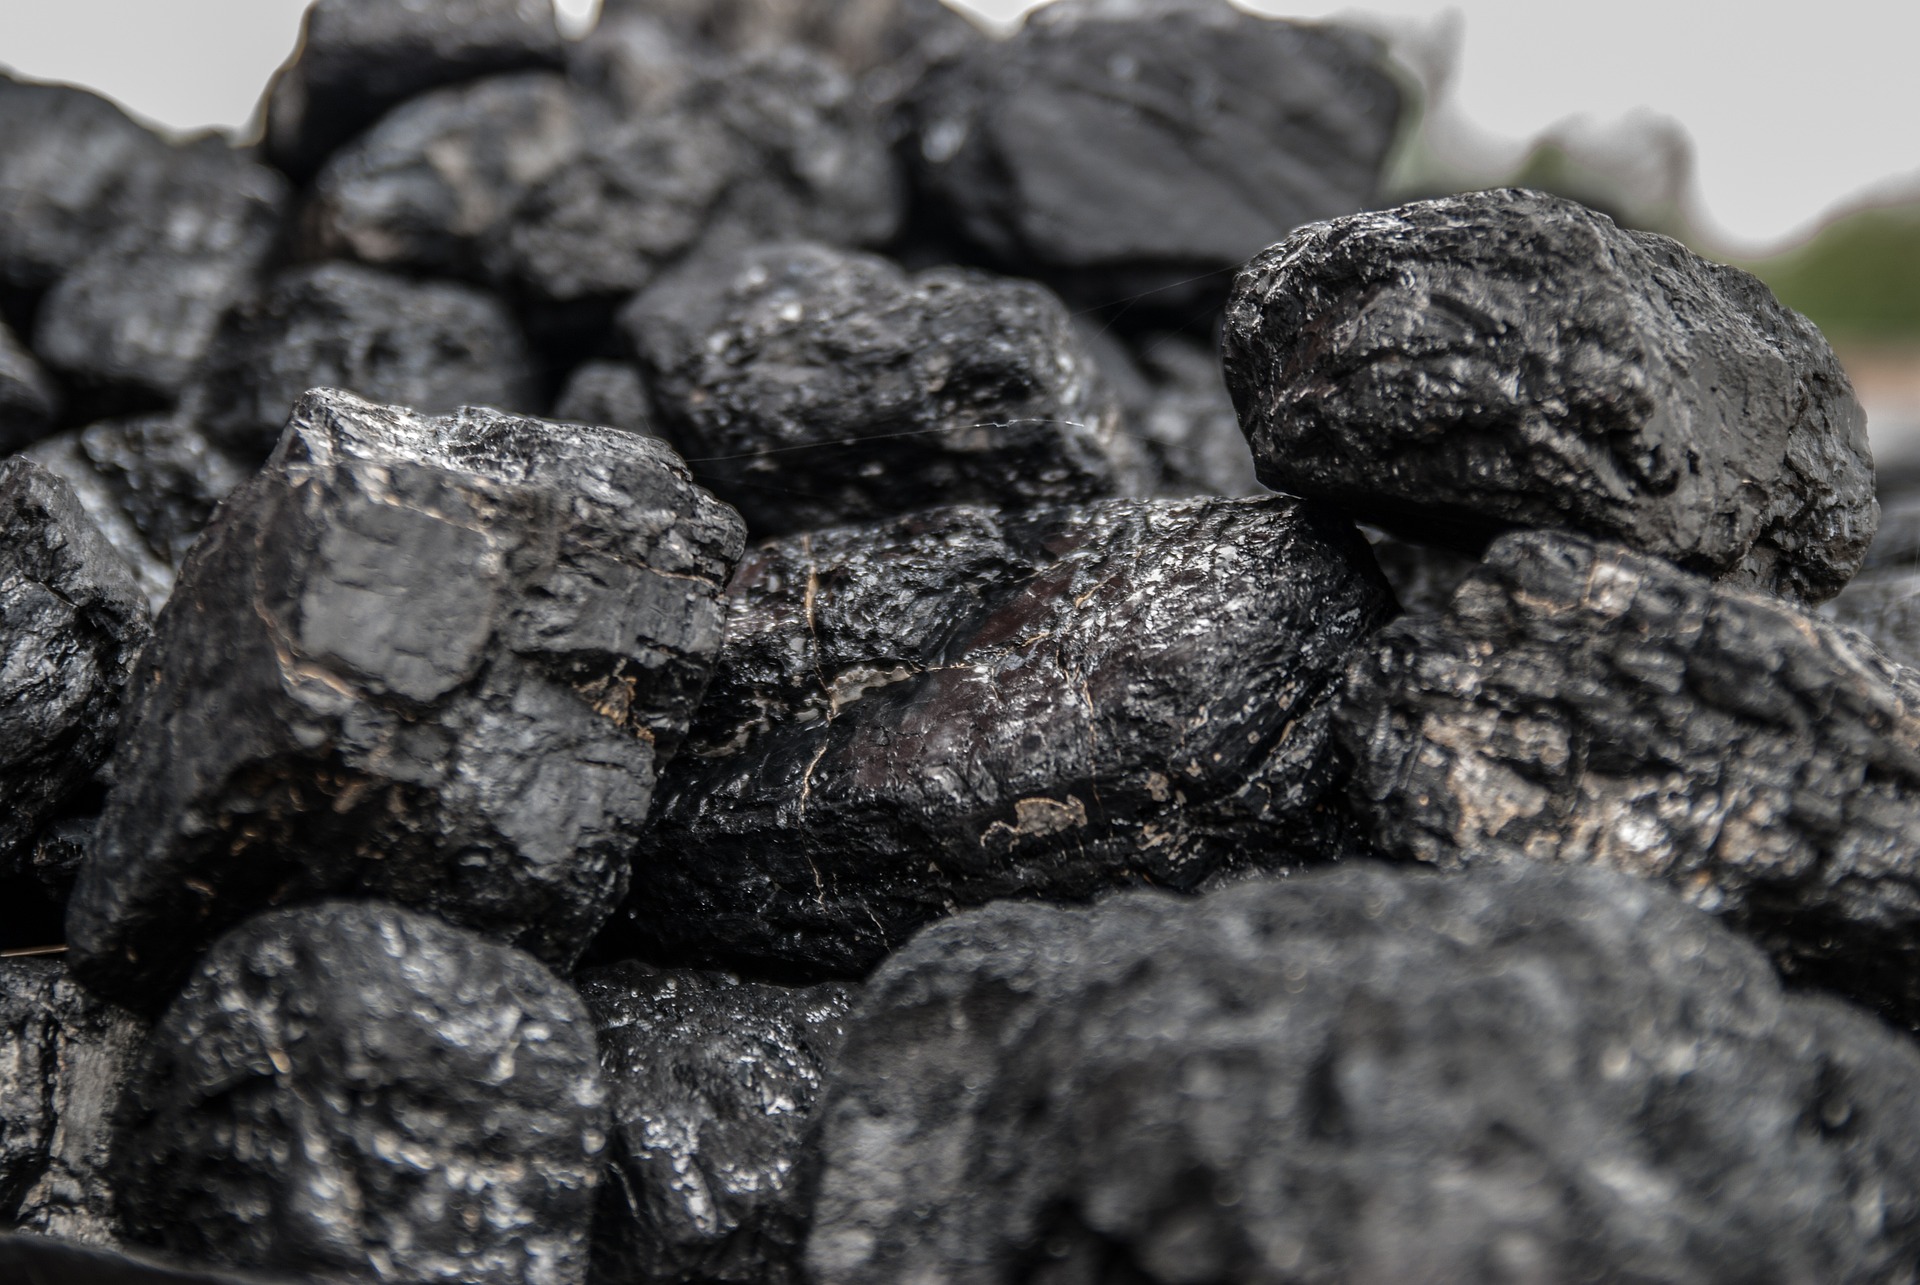 Informacja w sprawie sprzedaży węgla przez Gminę Kamionka Wielka